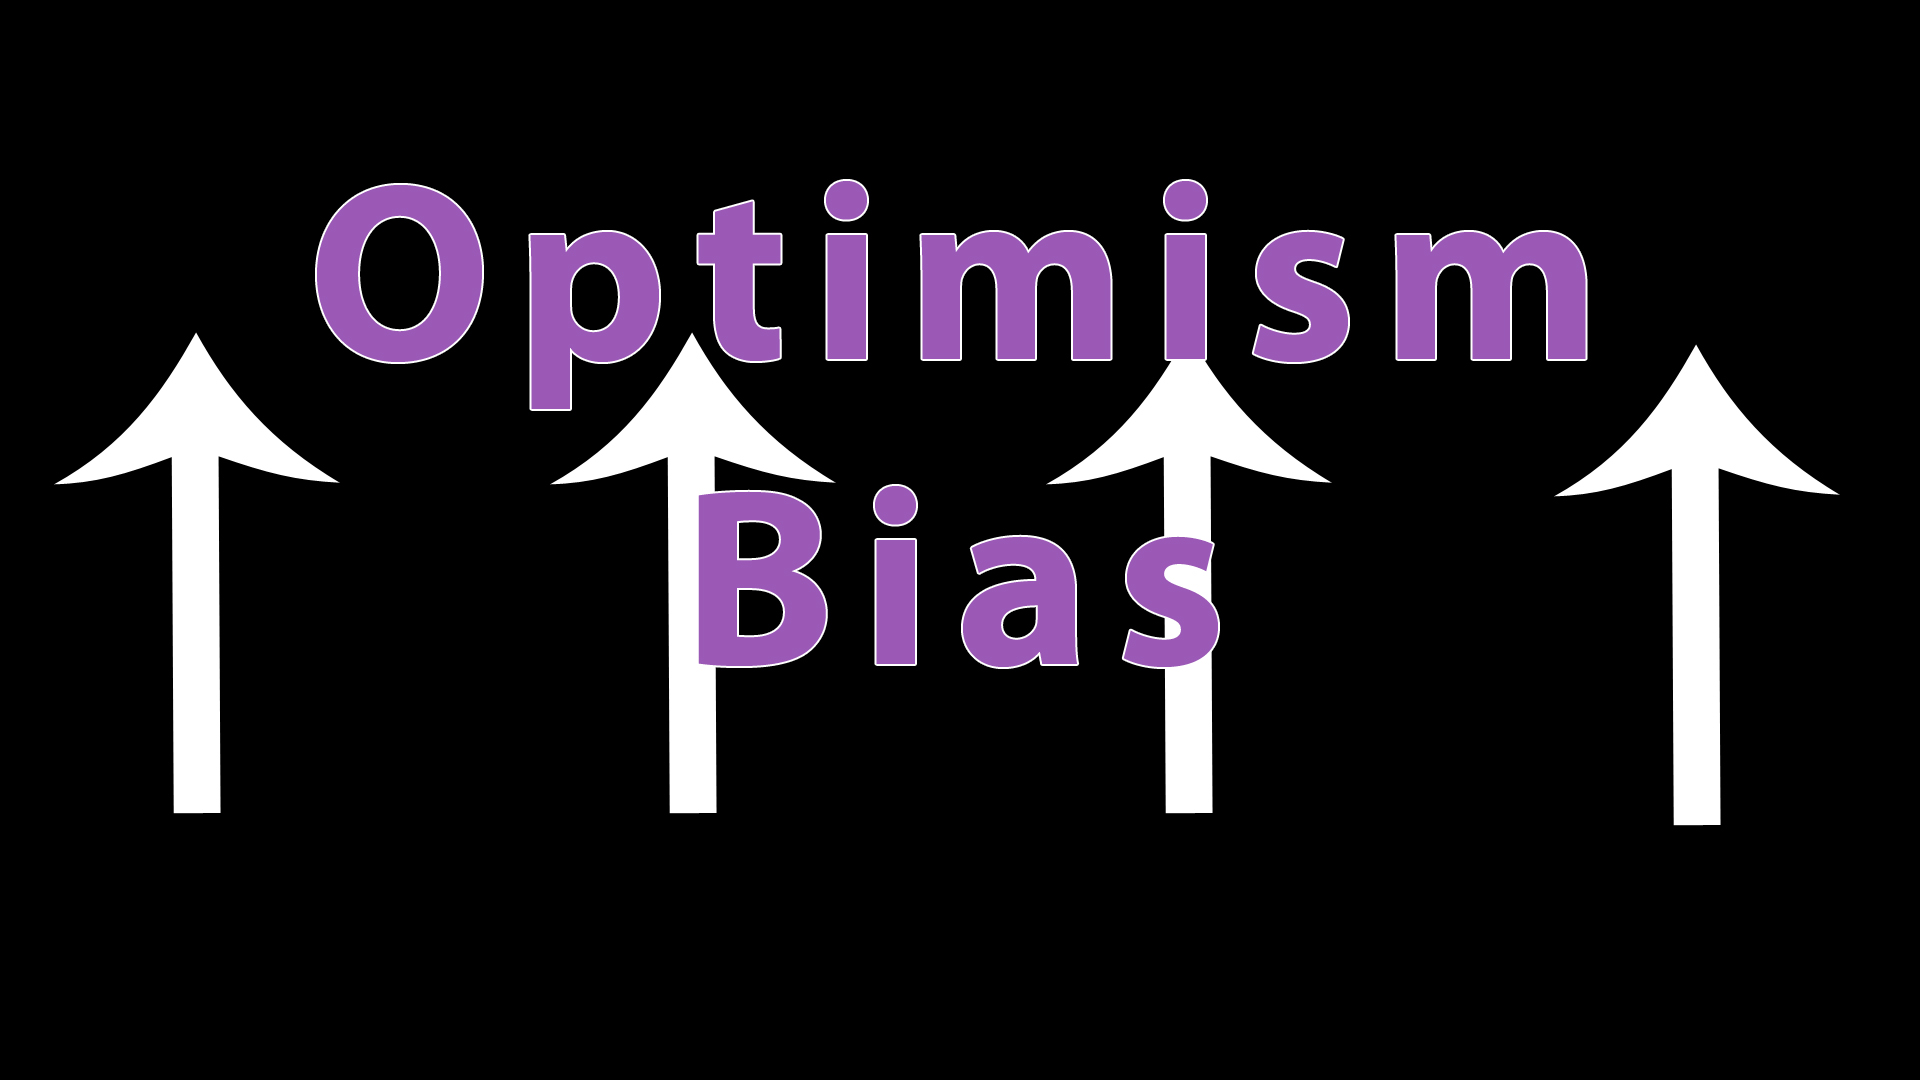 The Optimism Bias